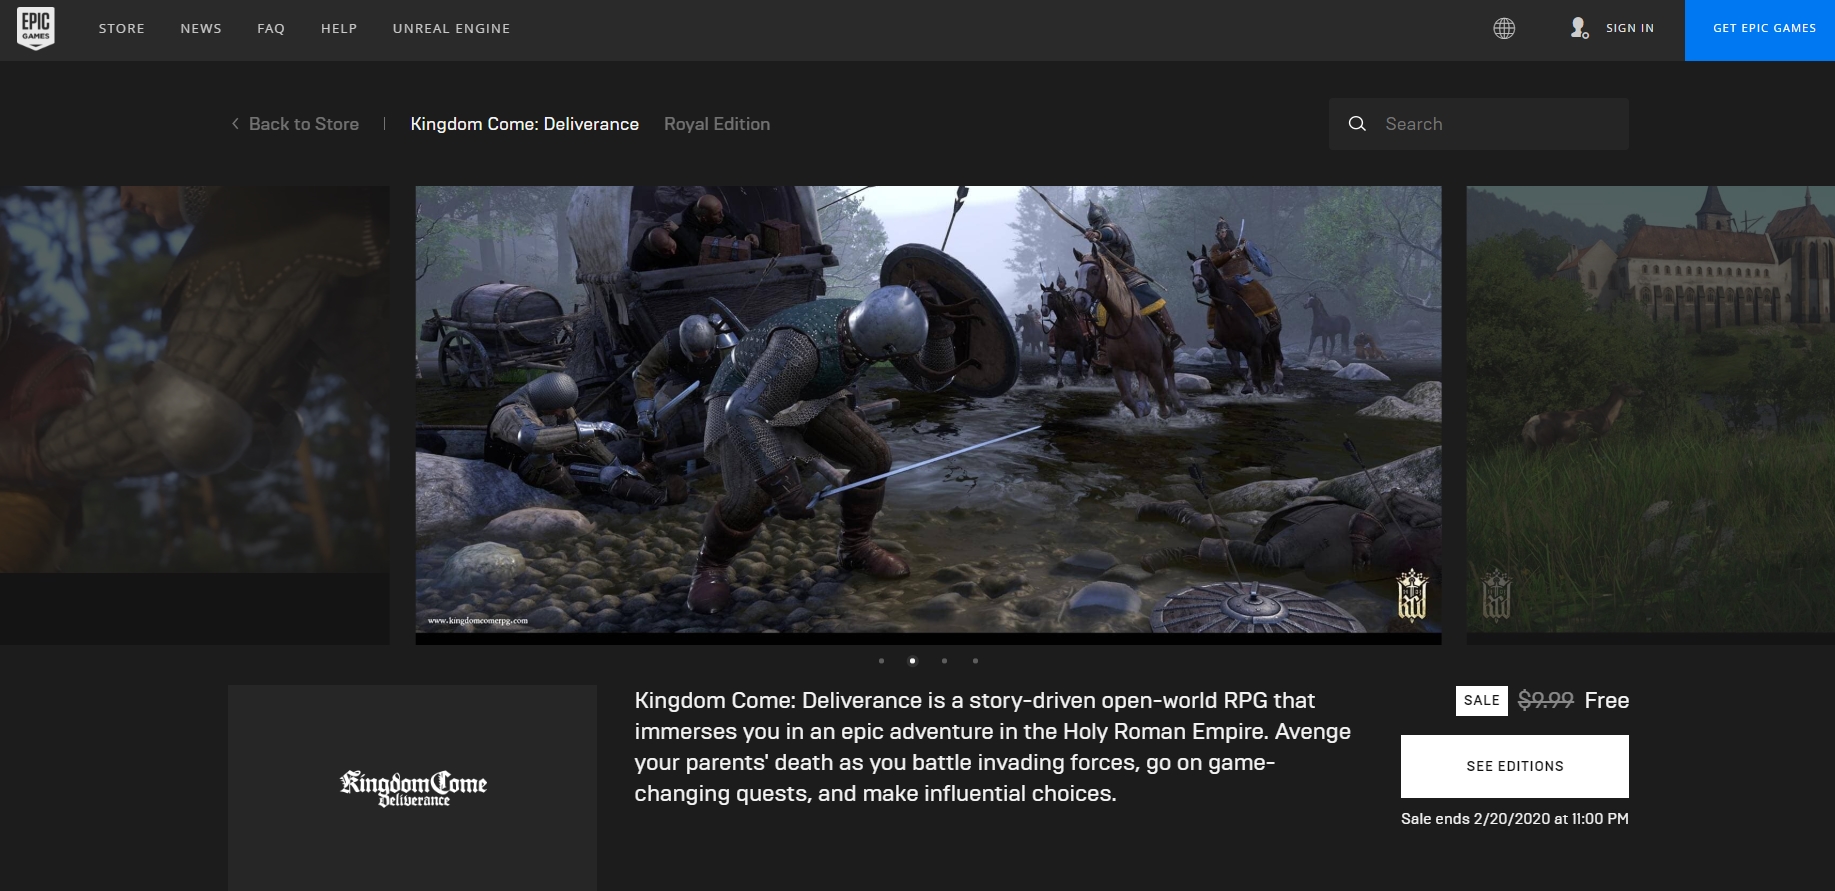 Nhanh tay lấy ngay Kingdom Come: Deliverance, game nhập vai hành động đỉnh cao đang được Epic tặng miễn phí 100%